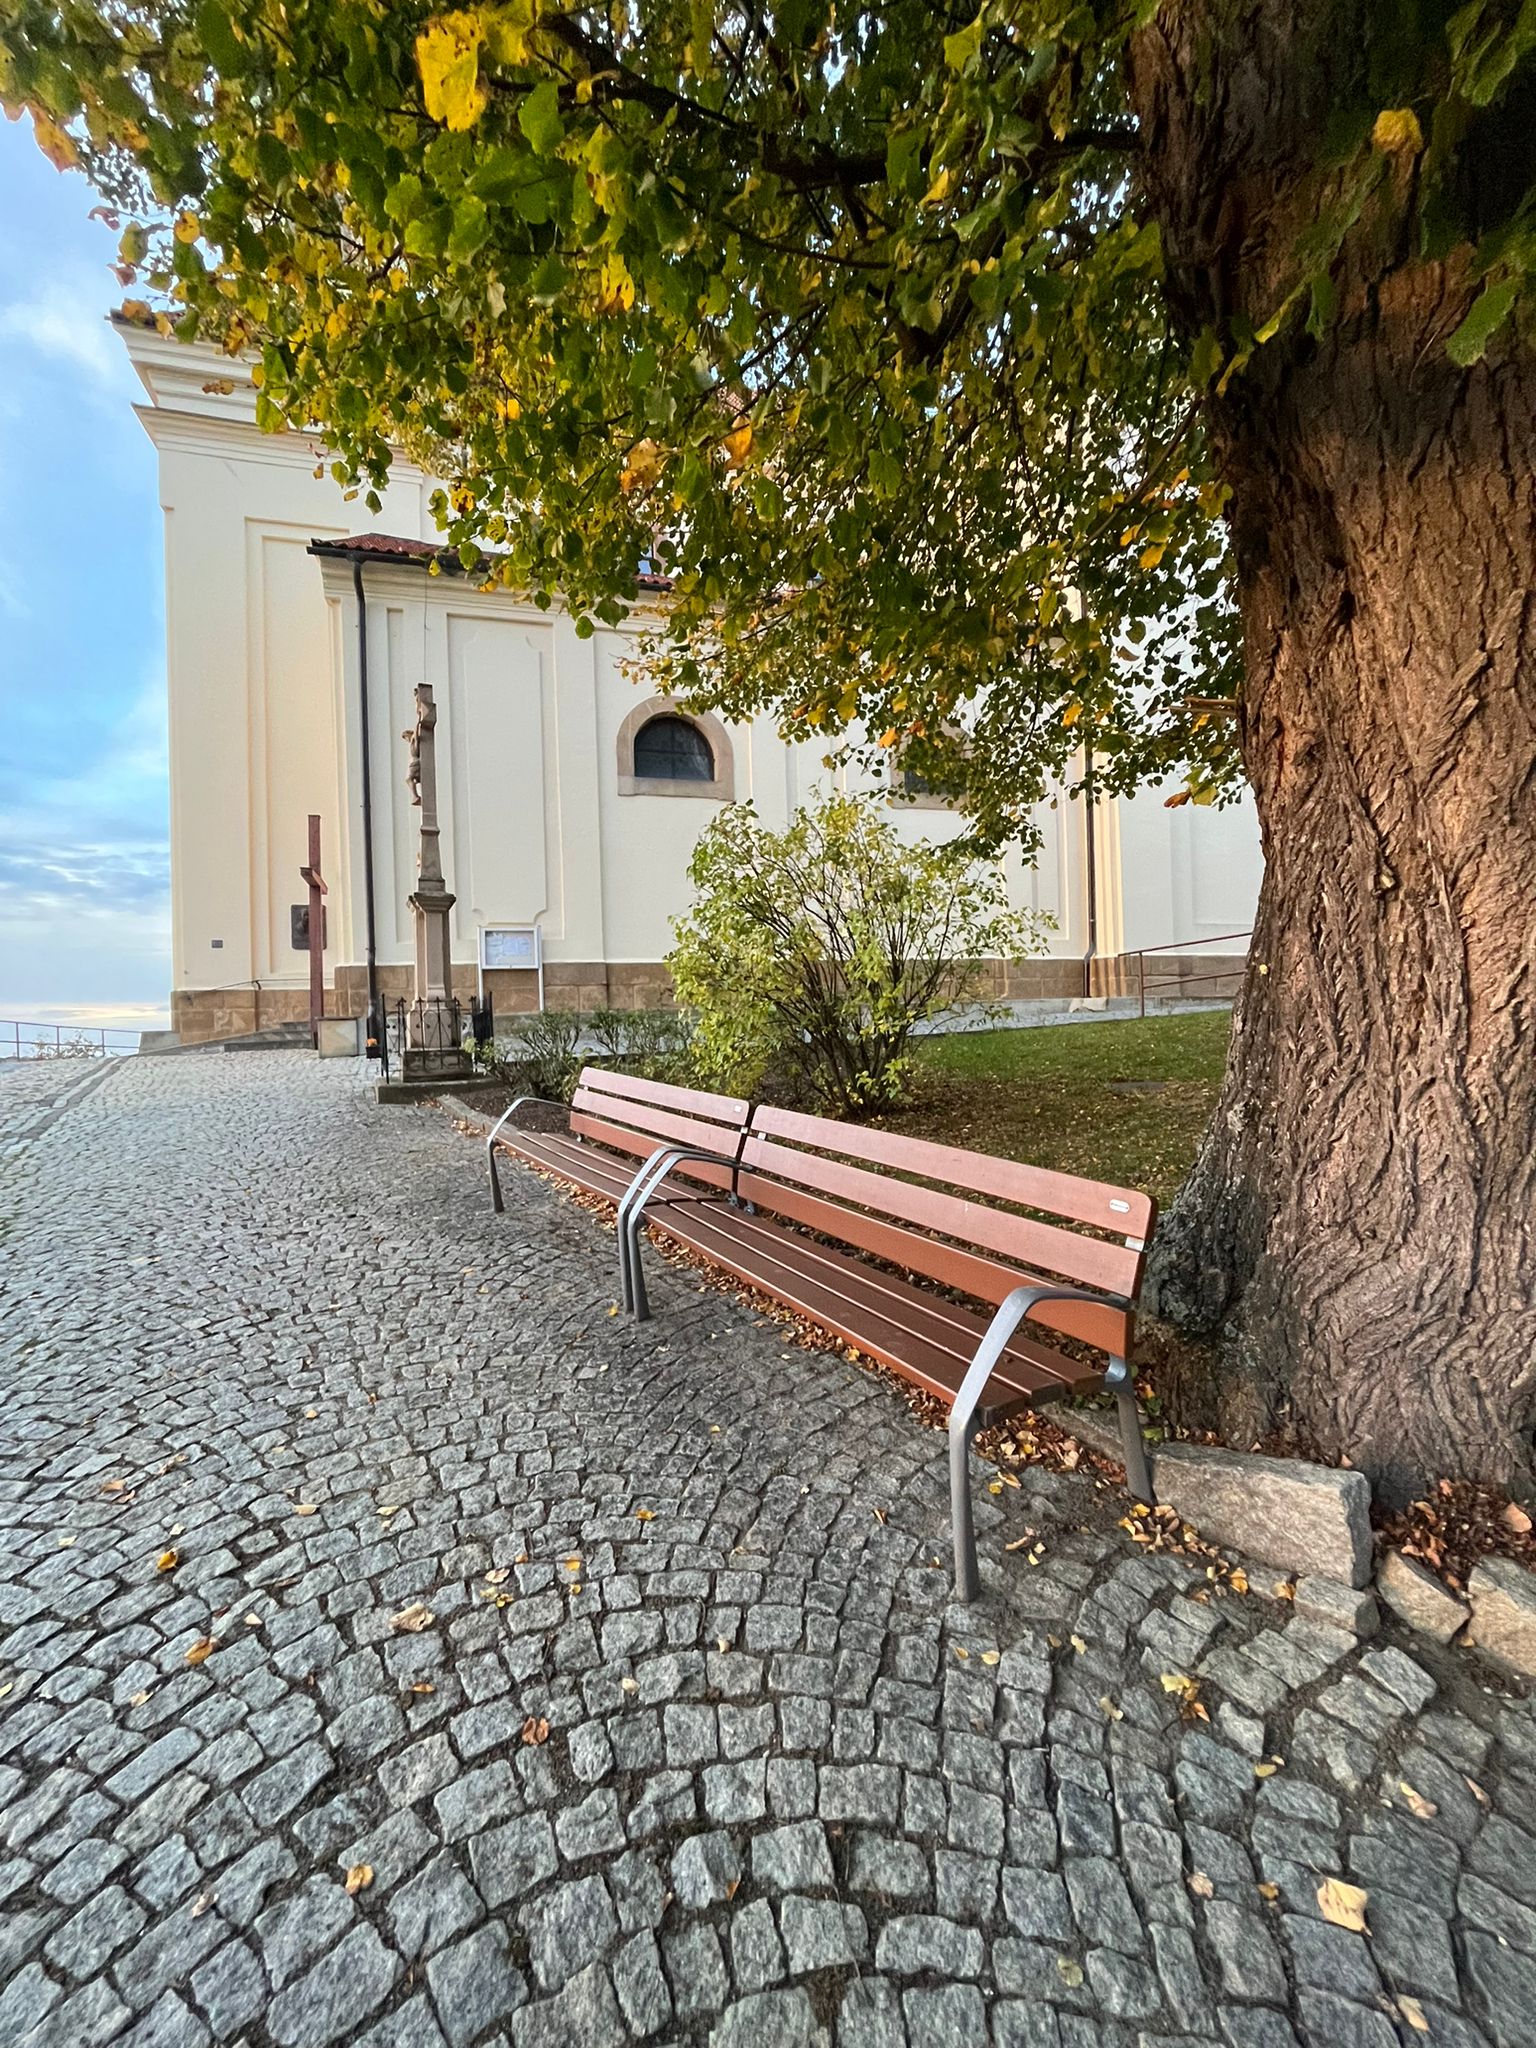 Typy laviček pro města a obce a jejich výhody - litinové, kovové a betonové lavičky